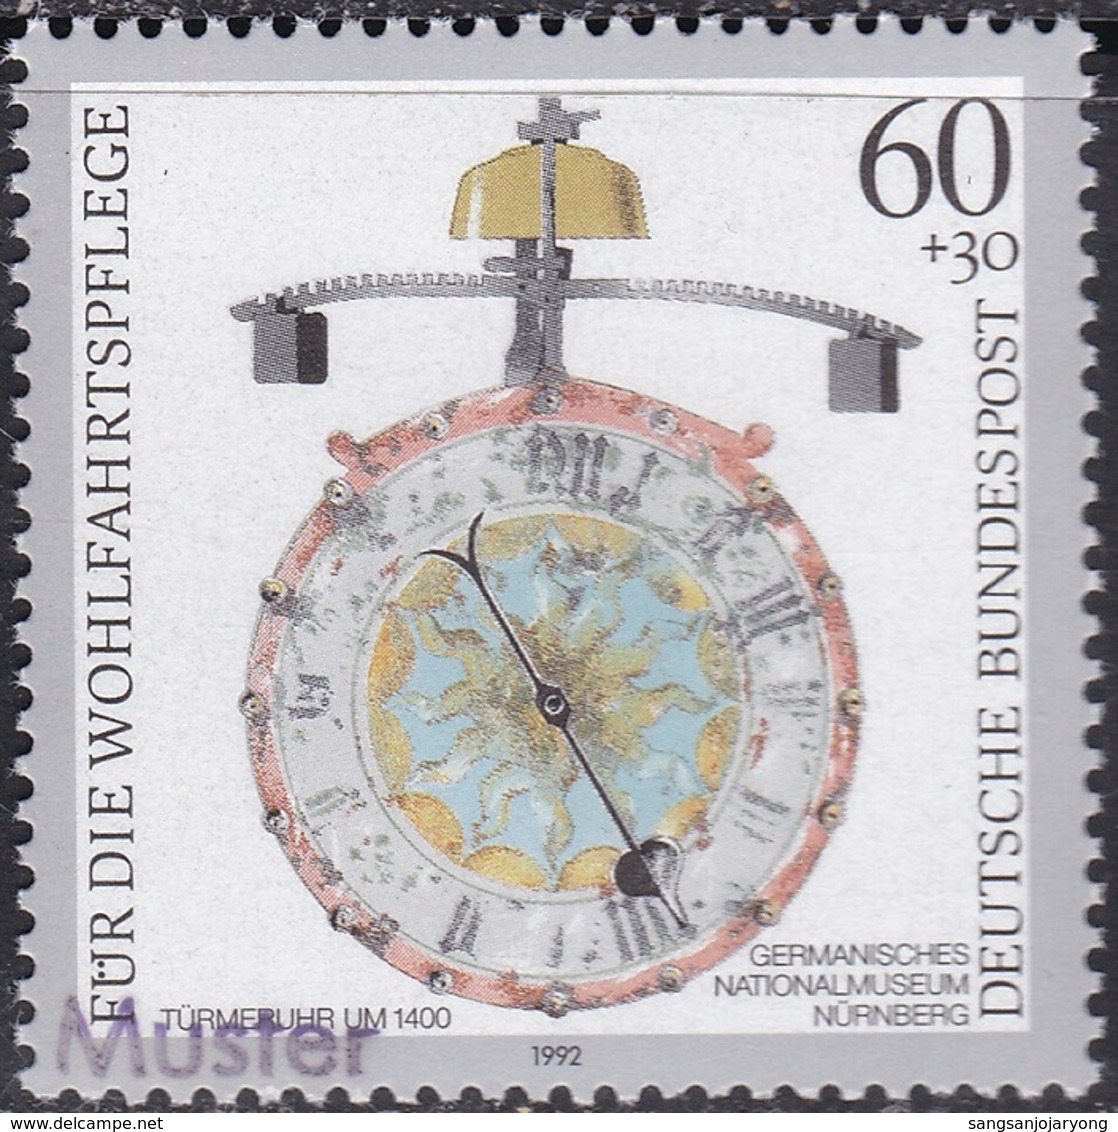 Specimen, Germany ScB734 Antique Clock, Turret (c. 1400), Horloge - Horlogerie